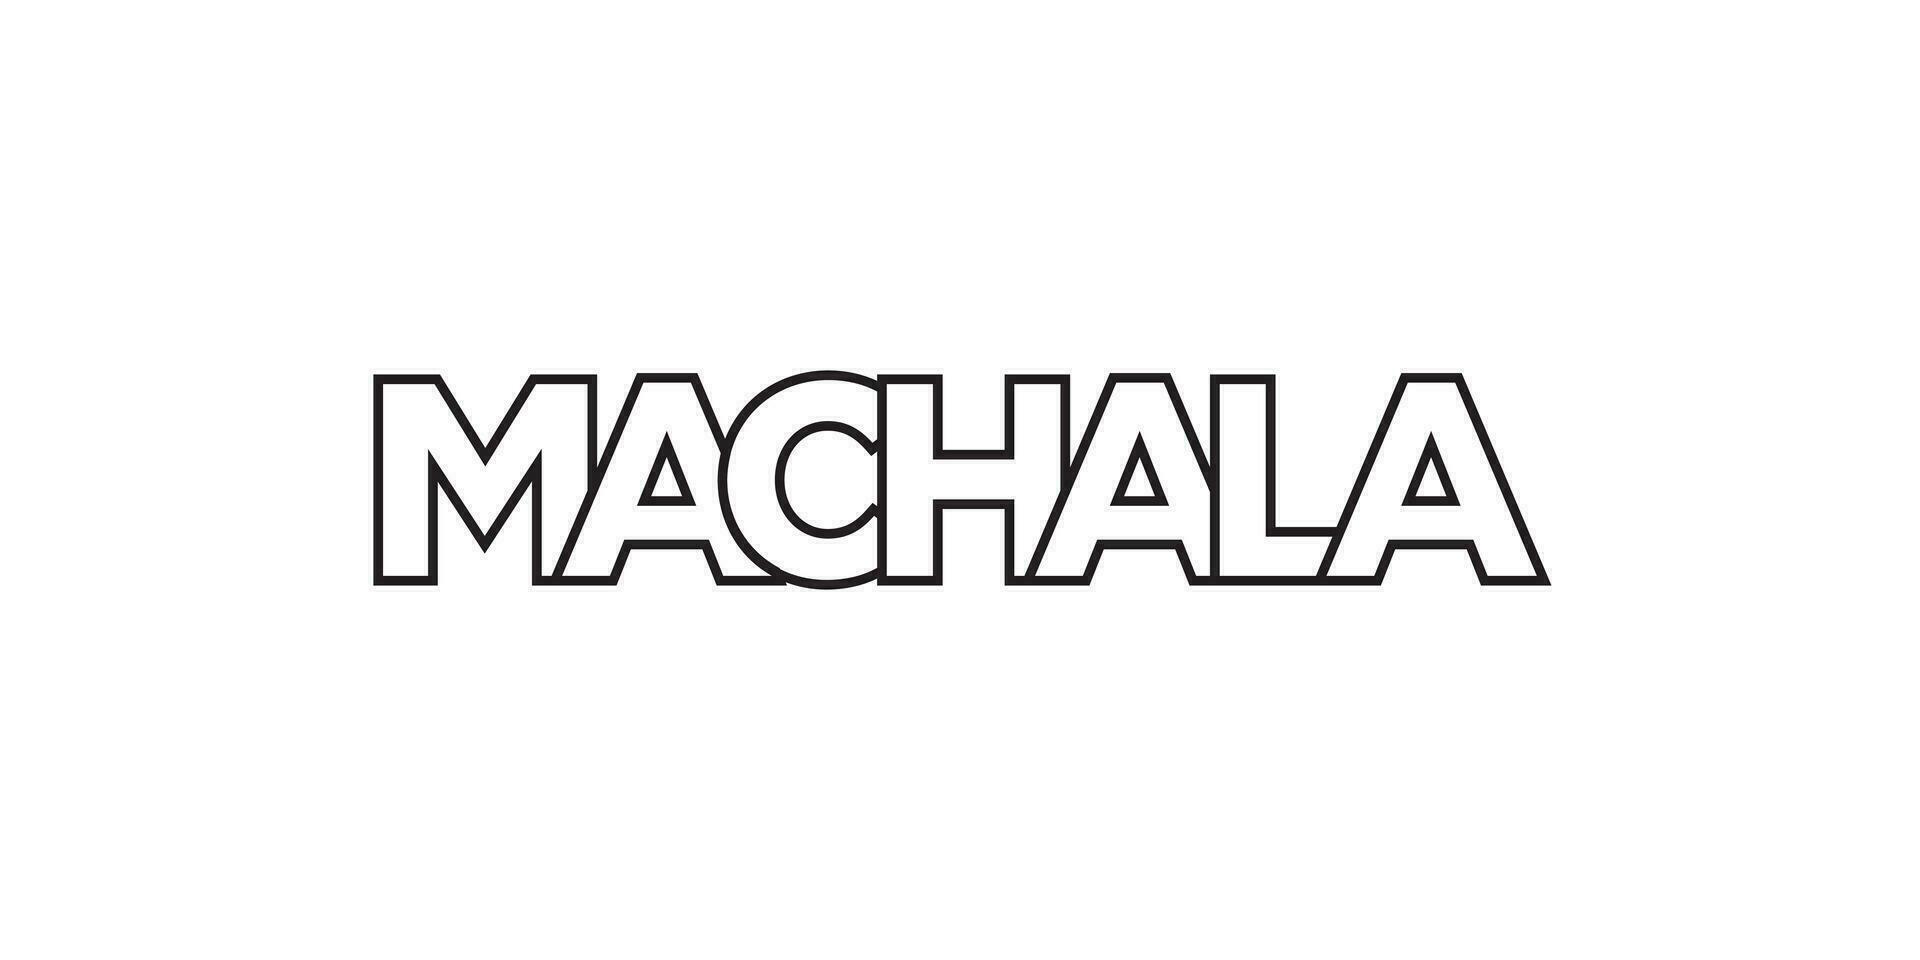 machala dans le équateur emblème. le conception Caractéristiques une géométrique style, vecteur illustration avec audacieux typographie dans une moderne Police de caractère. le graphique slogan caractères.